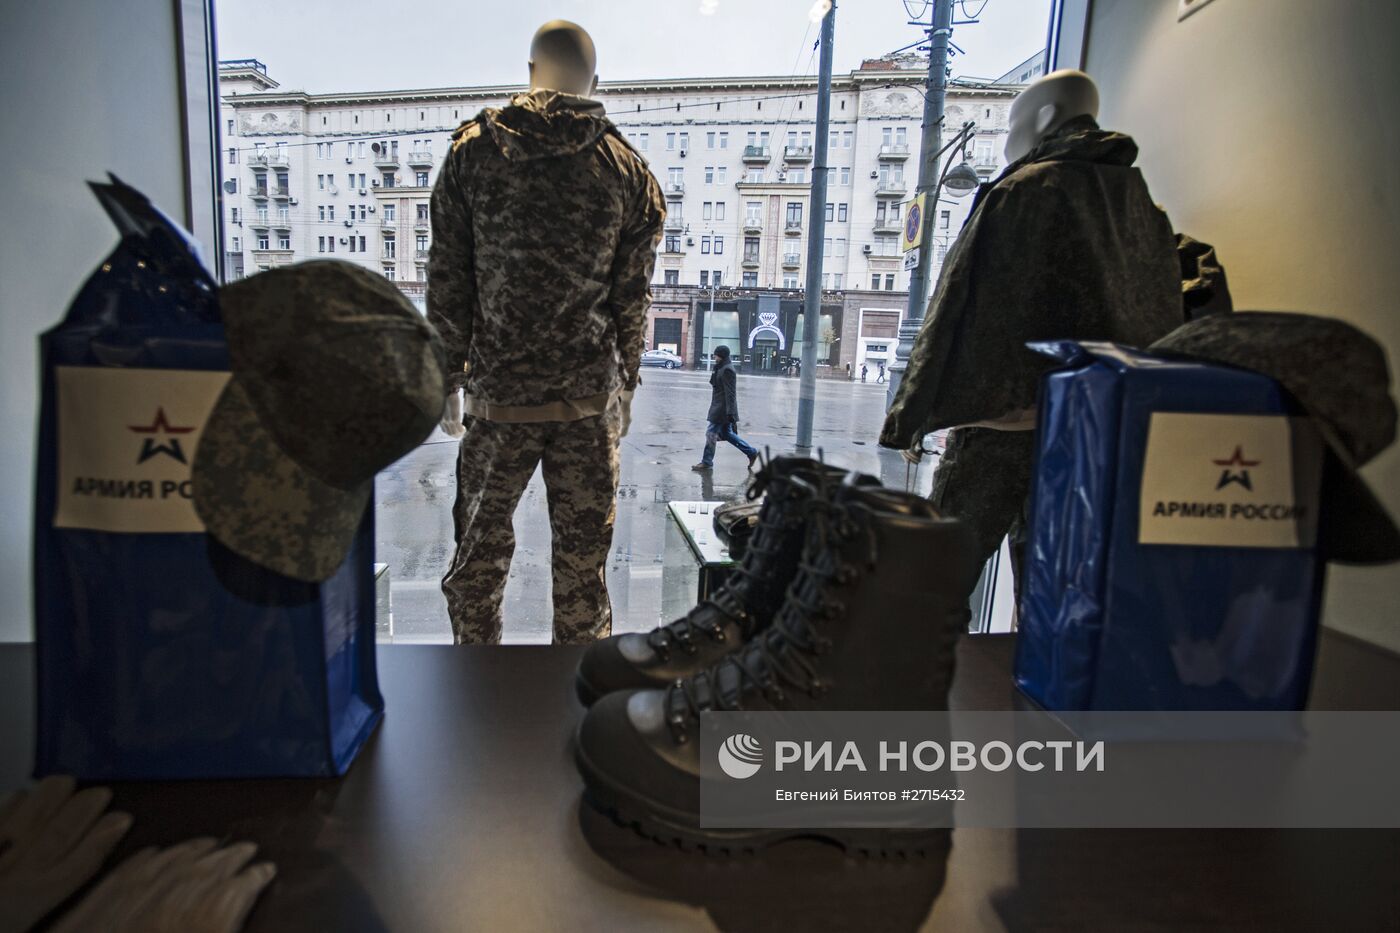 Магазин "Армия России" в Москве